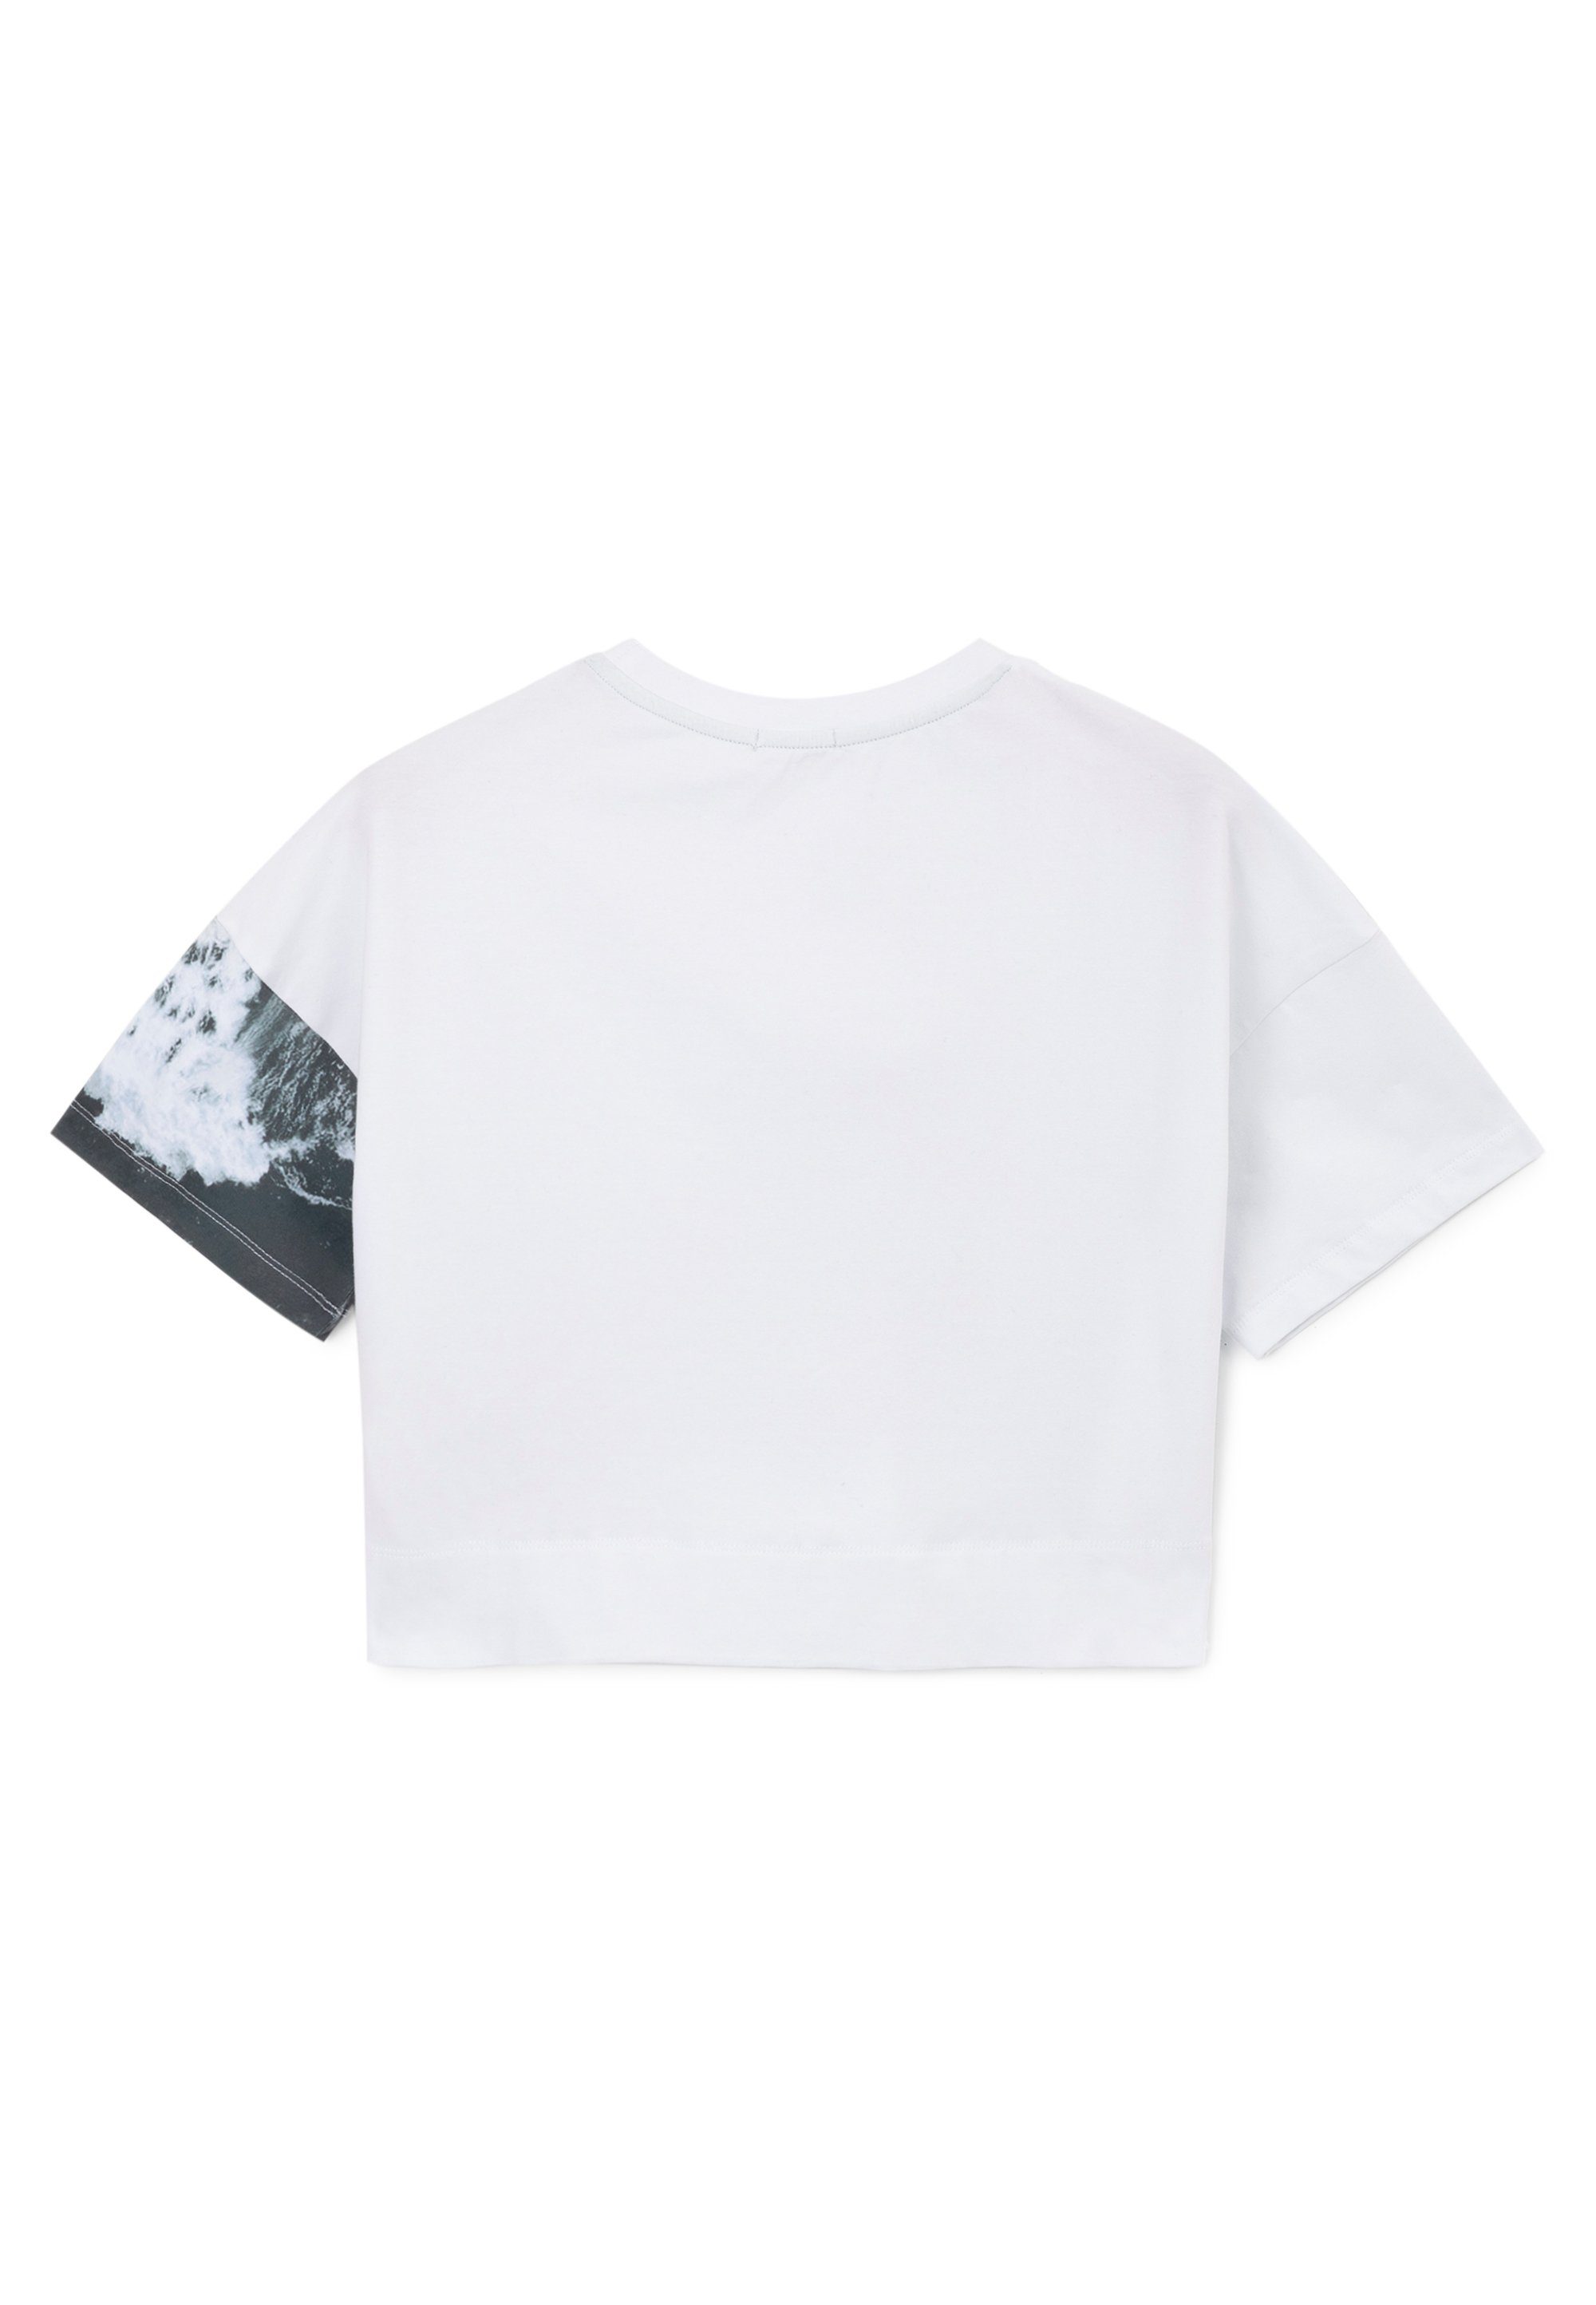 Gulliver mit großem T-Shirt Frontprint